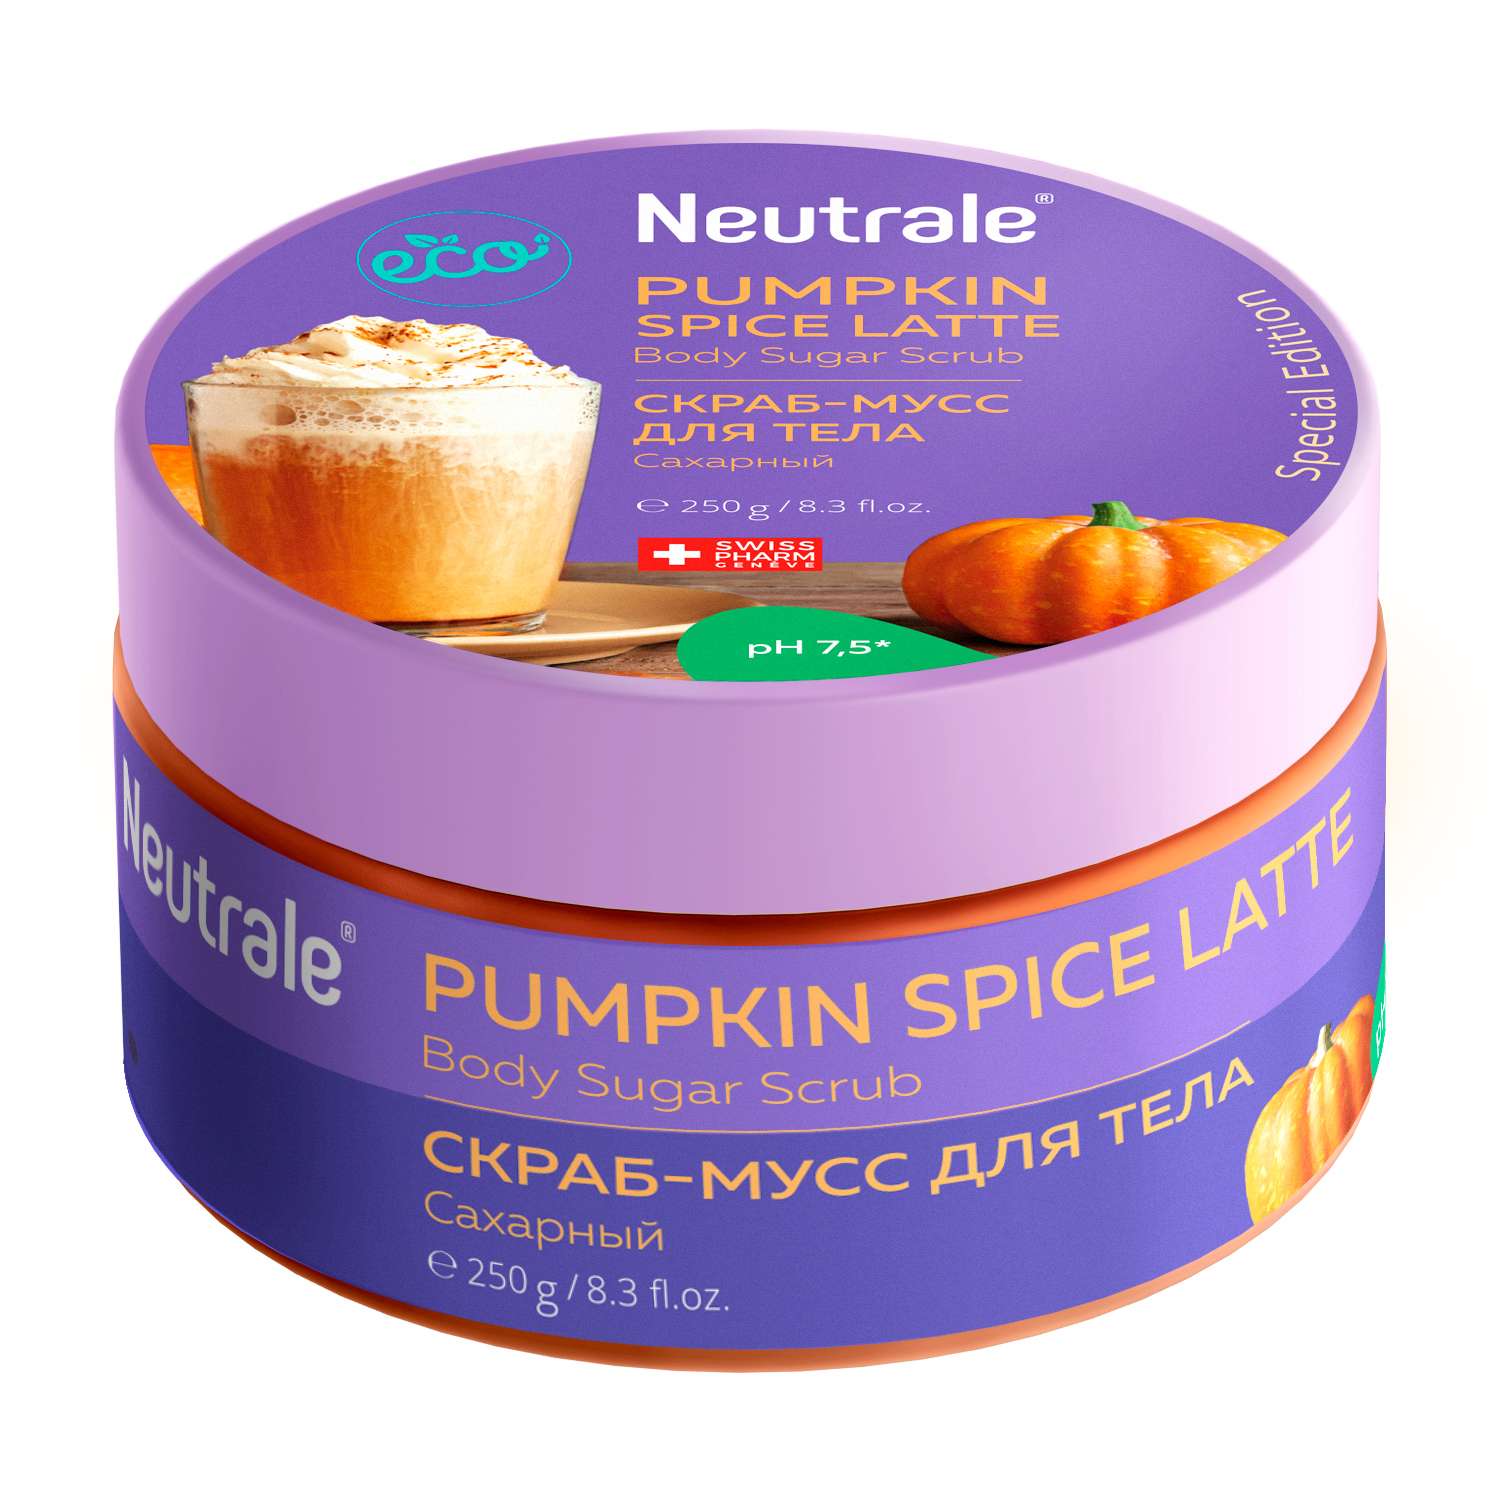 Скраб-мусс для тела Neutrale сахарный Pumpkin spice latte 250г - фото 1